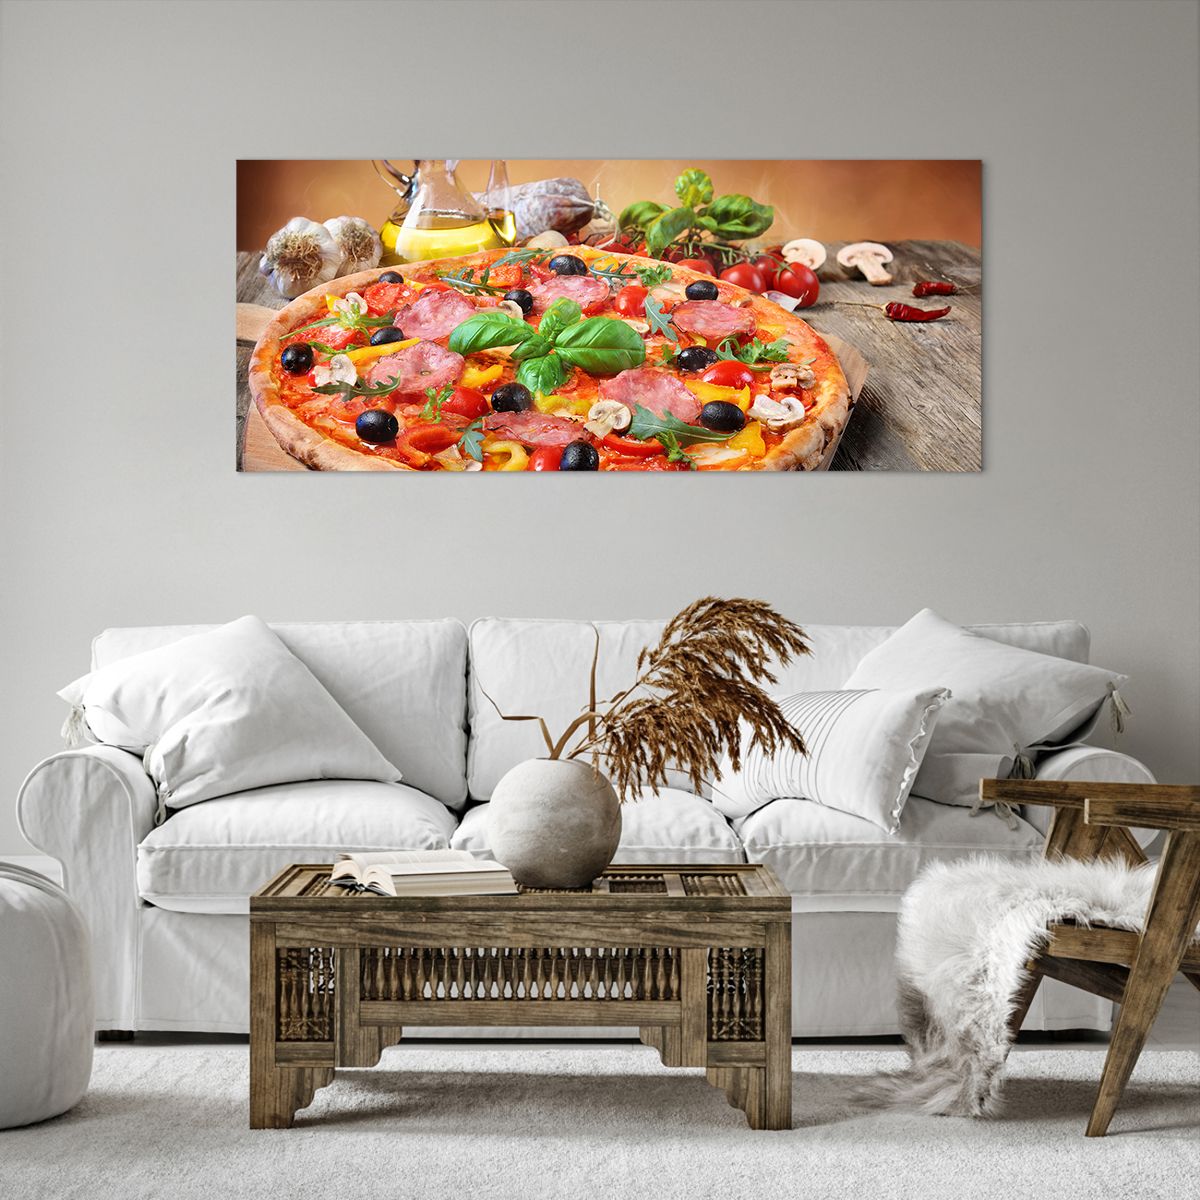 Bild auf Leinwand Gastronomie, Bild auf Leinwand Pizza, Bild auf Leinwand Italien, Bild auf Leinwand Küche, Bild auf Leinwand Öl